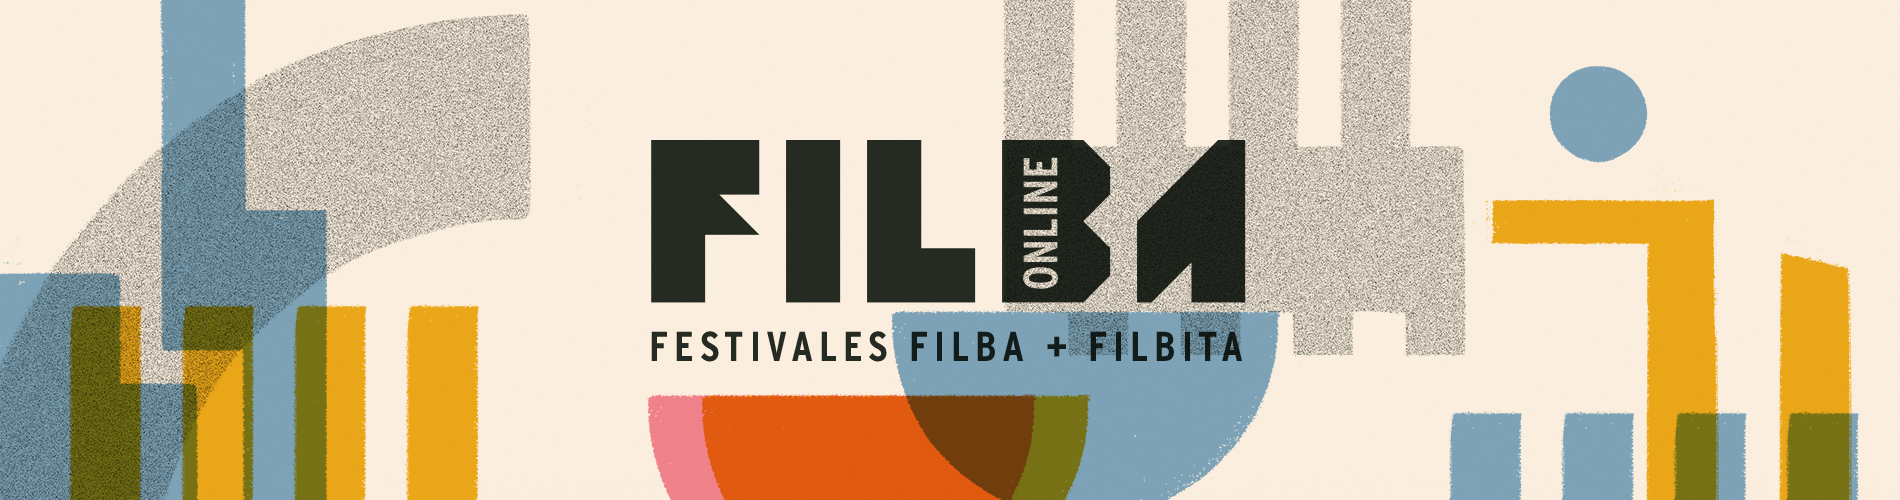 Filba Online 2020 | Filba + Filbita